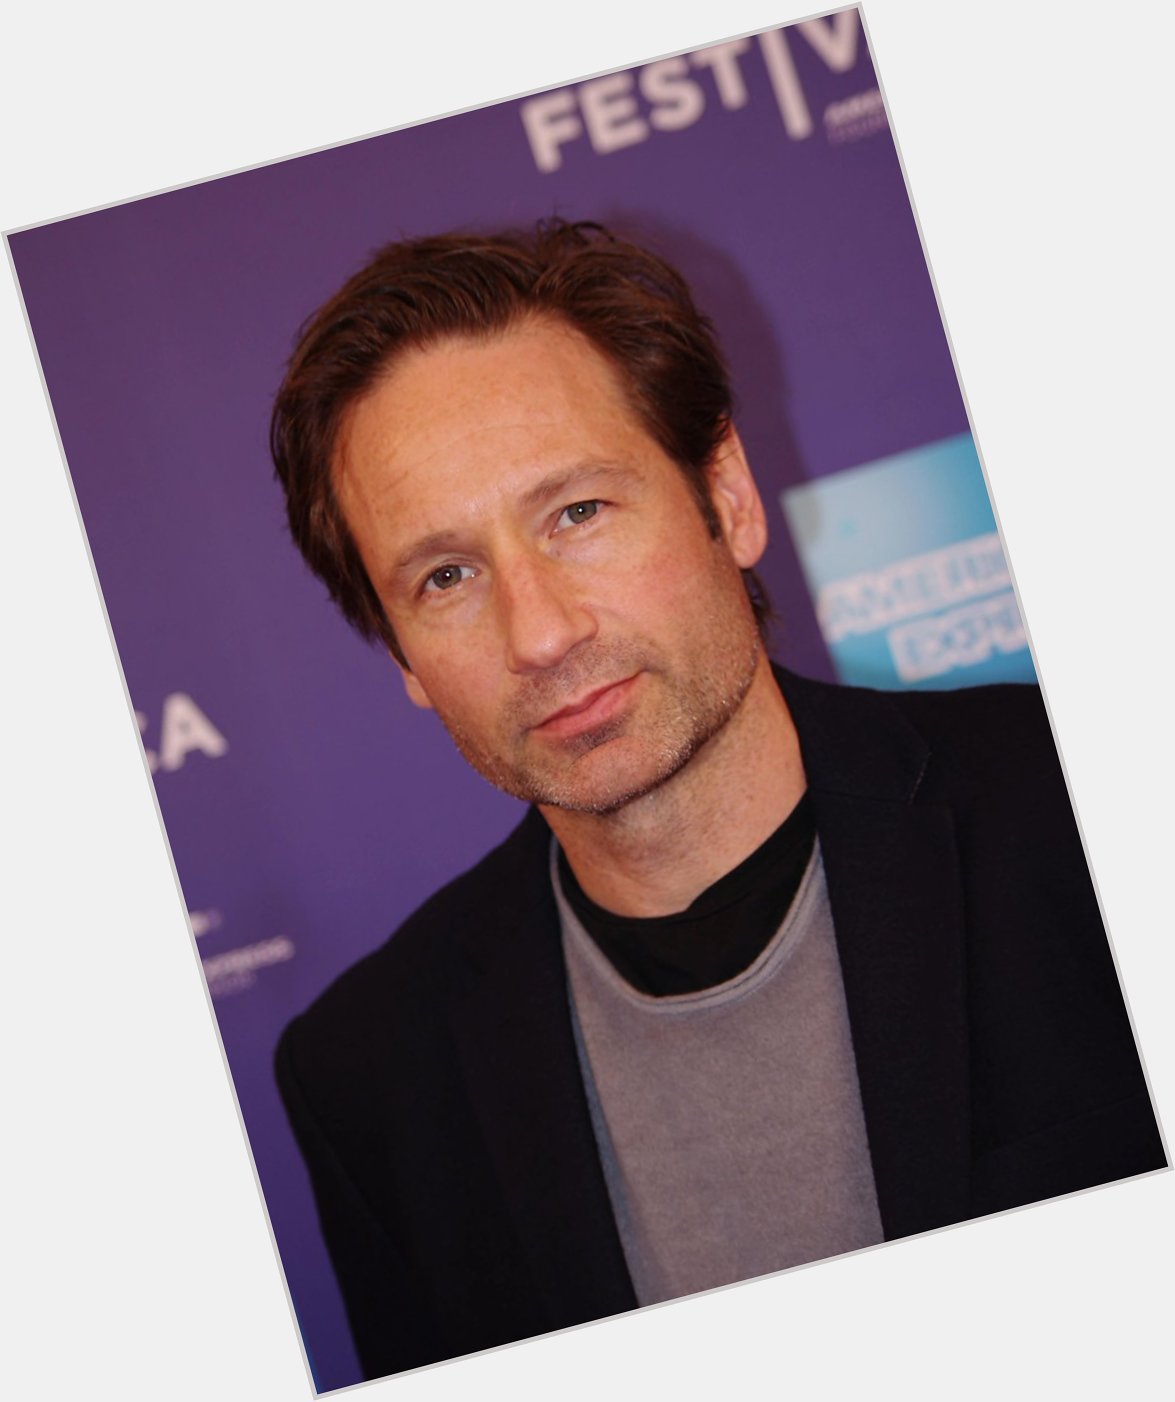 Mulder, oftewel David Duchovny, is vandaag 55 jaar oud geworden! Happy birthday! 